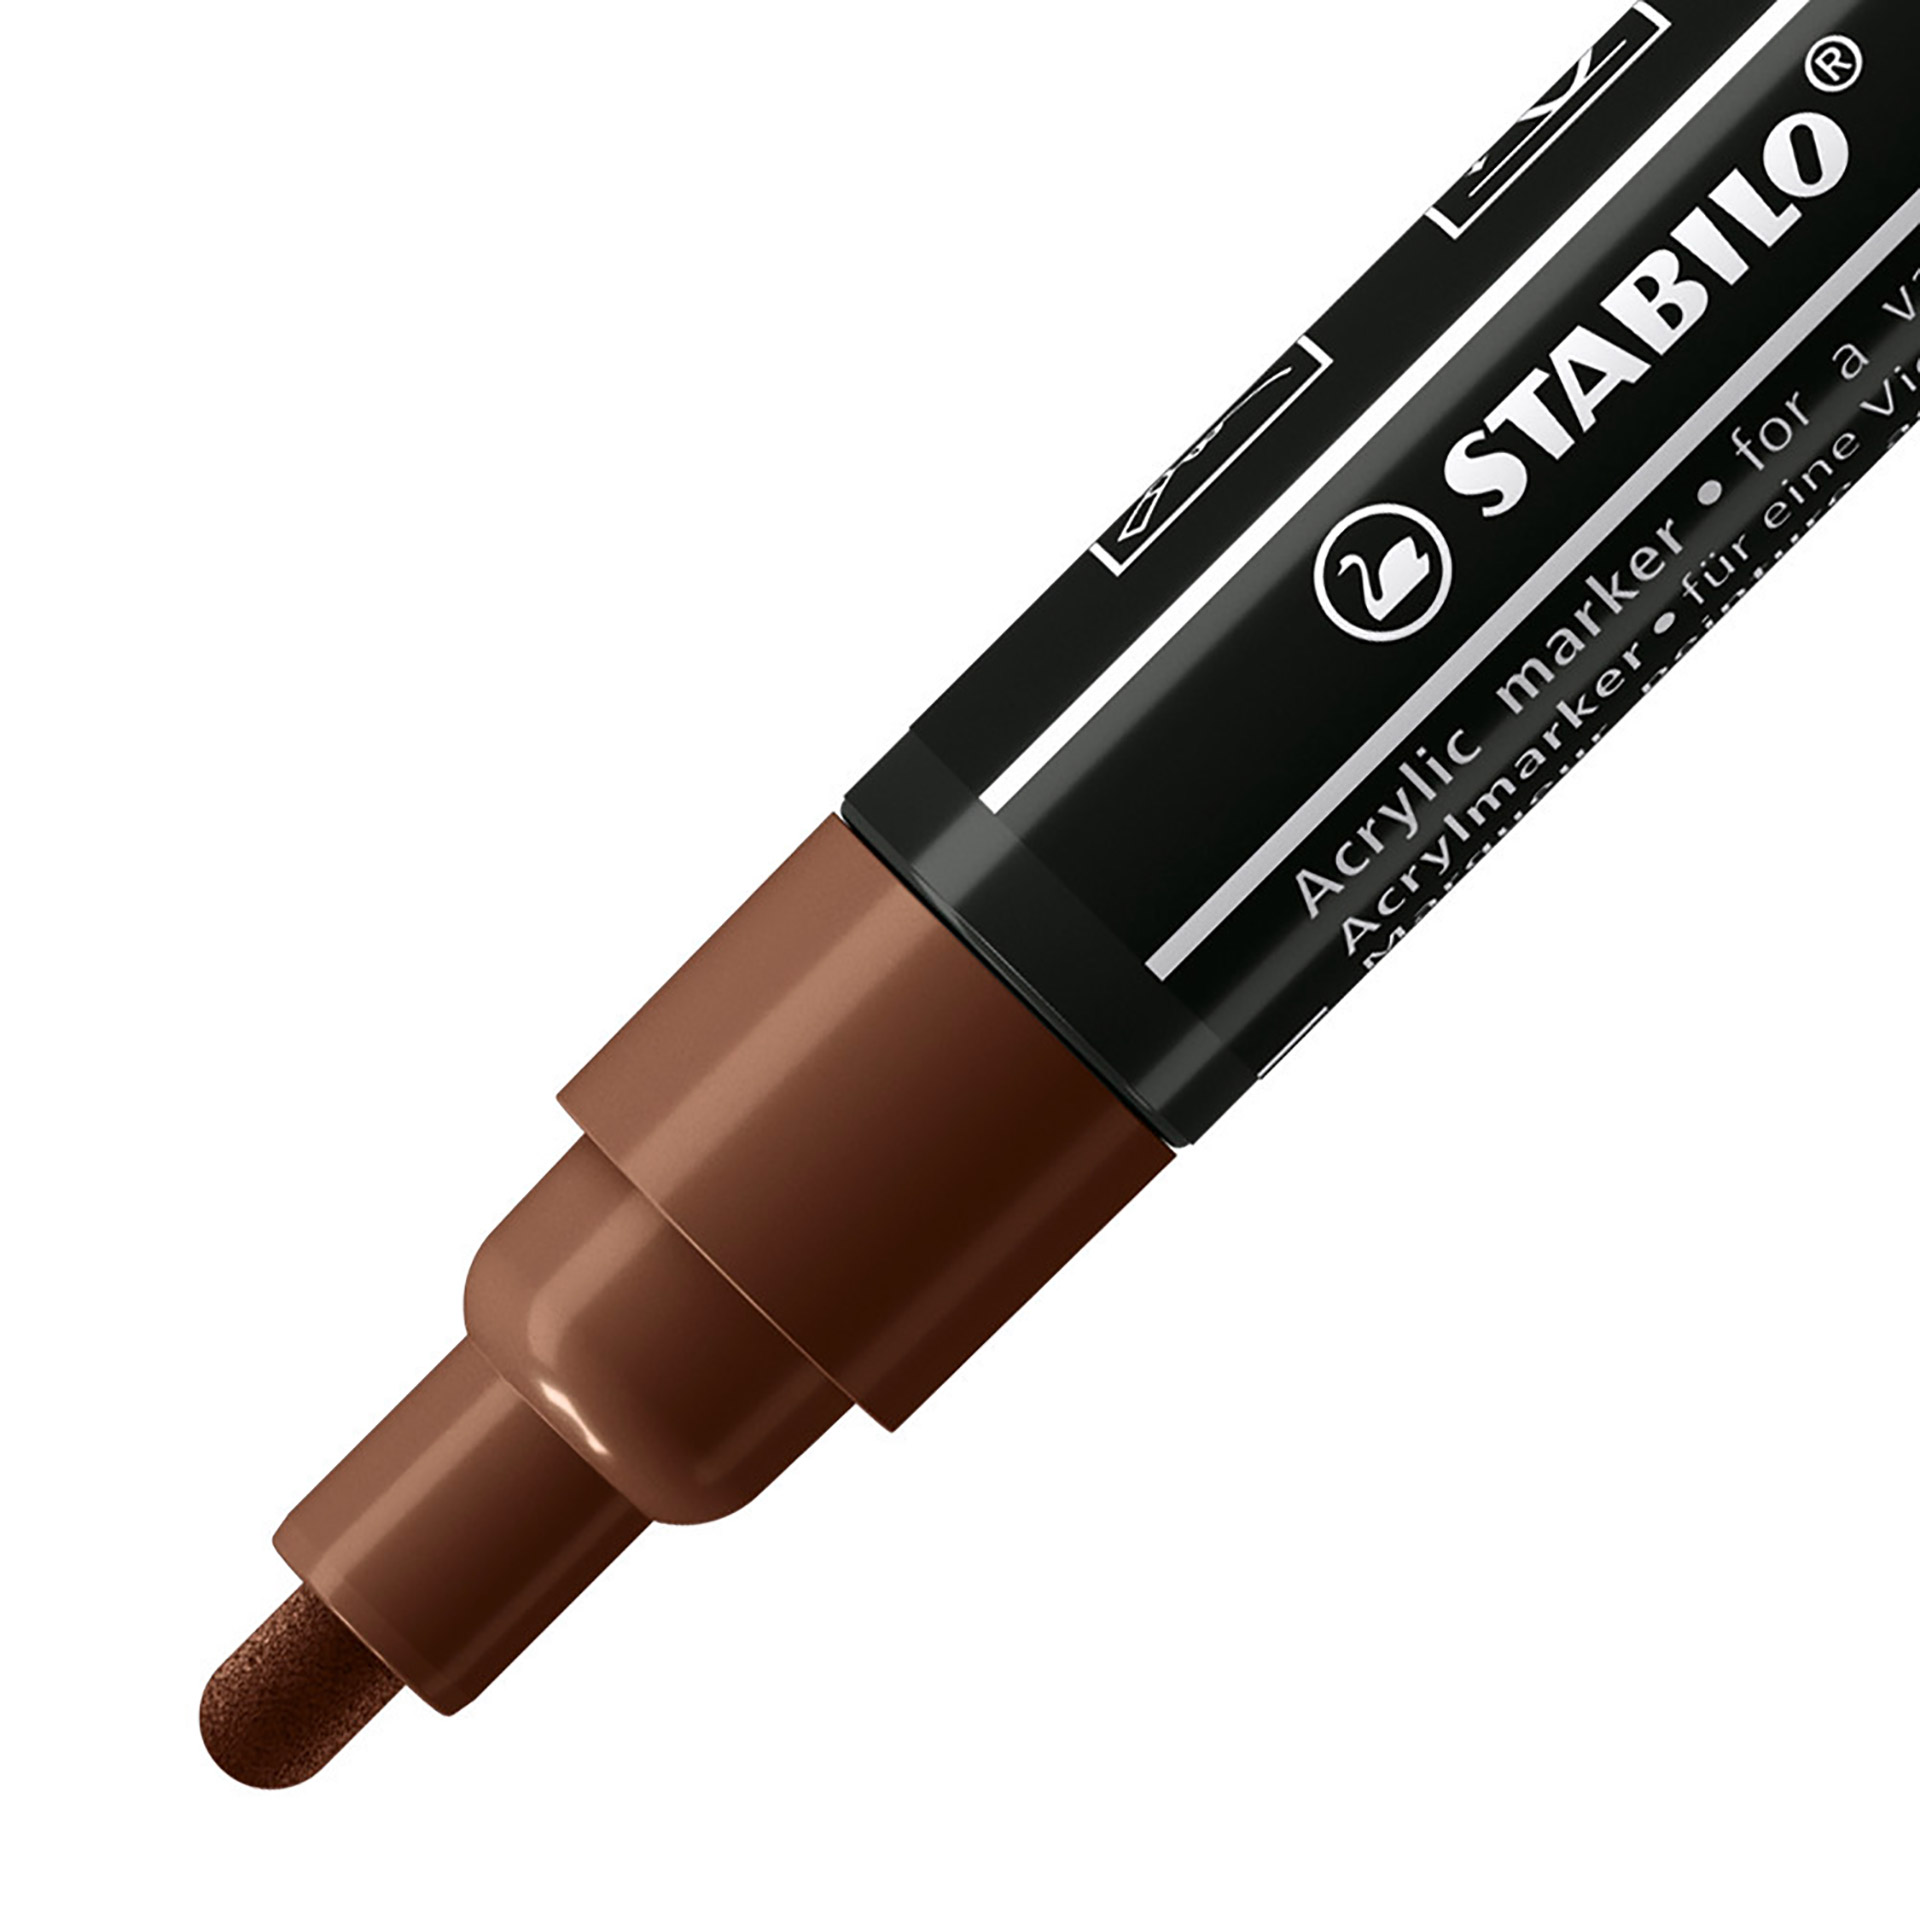 STABILO FREE Acrylic - T300 Punta rotonda 2-3mm - Confezione da 5 - Marrone, , large